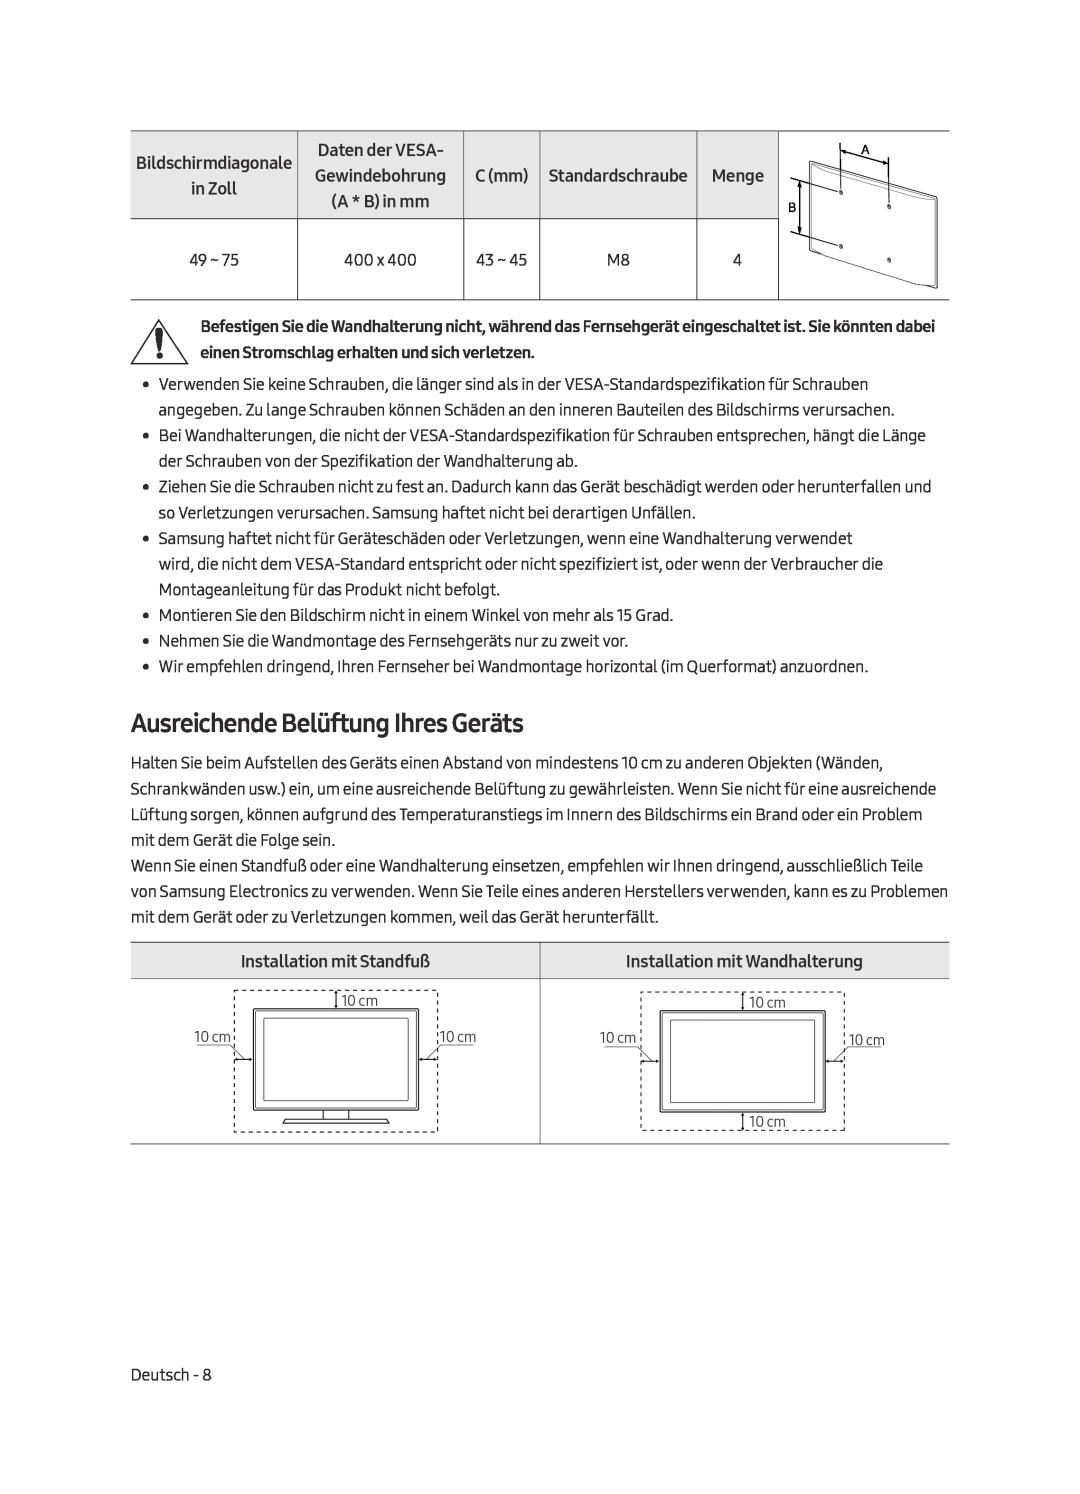 Samsung UE49MU7049TXZG manual Ausreichende Belüftung Ihres Geräts, Bildschirmdiagonale in Zoll, Installation mit Standfuß 